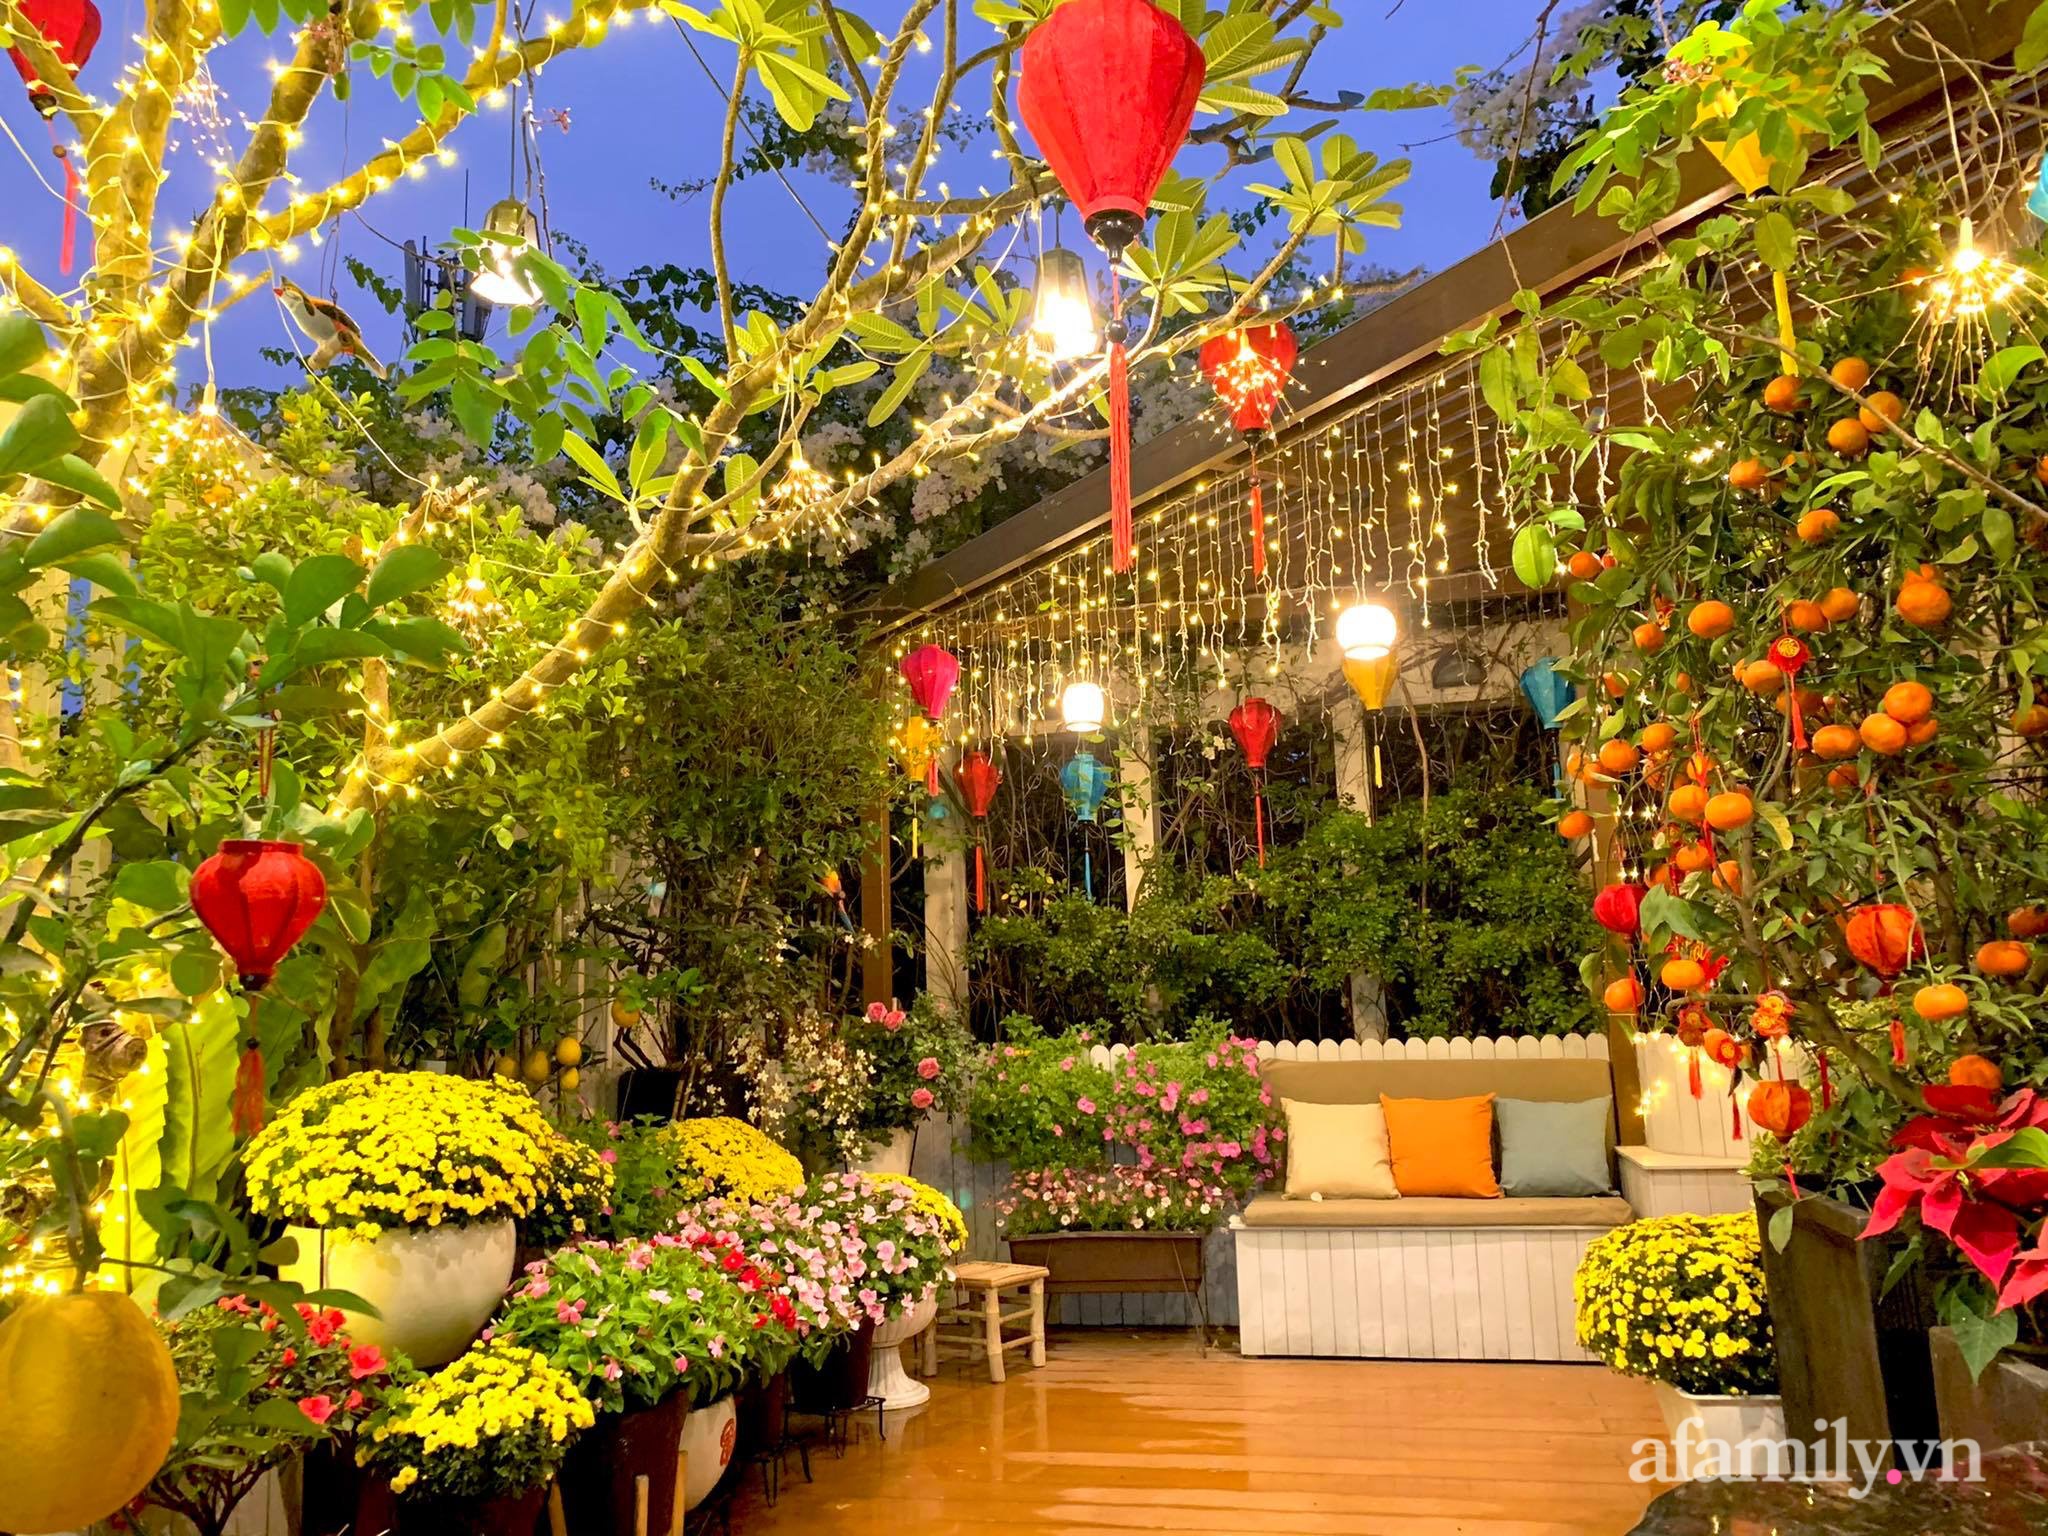 Nữ giám đốc Sài Gòn mang sắc màu Tết truyền thống làm đẹp cho khu vườn sân thượng - Ảnh 4.